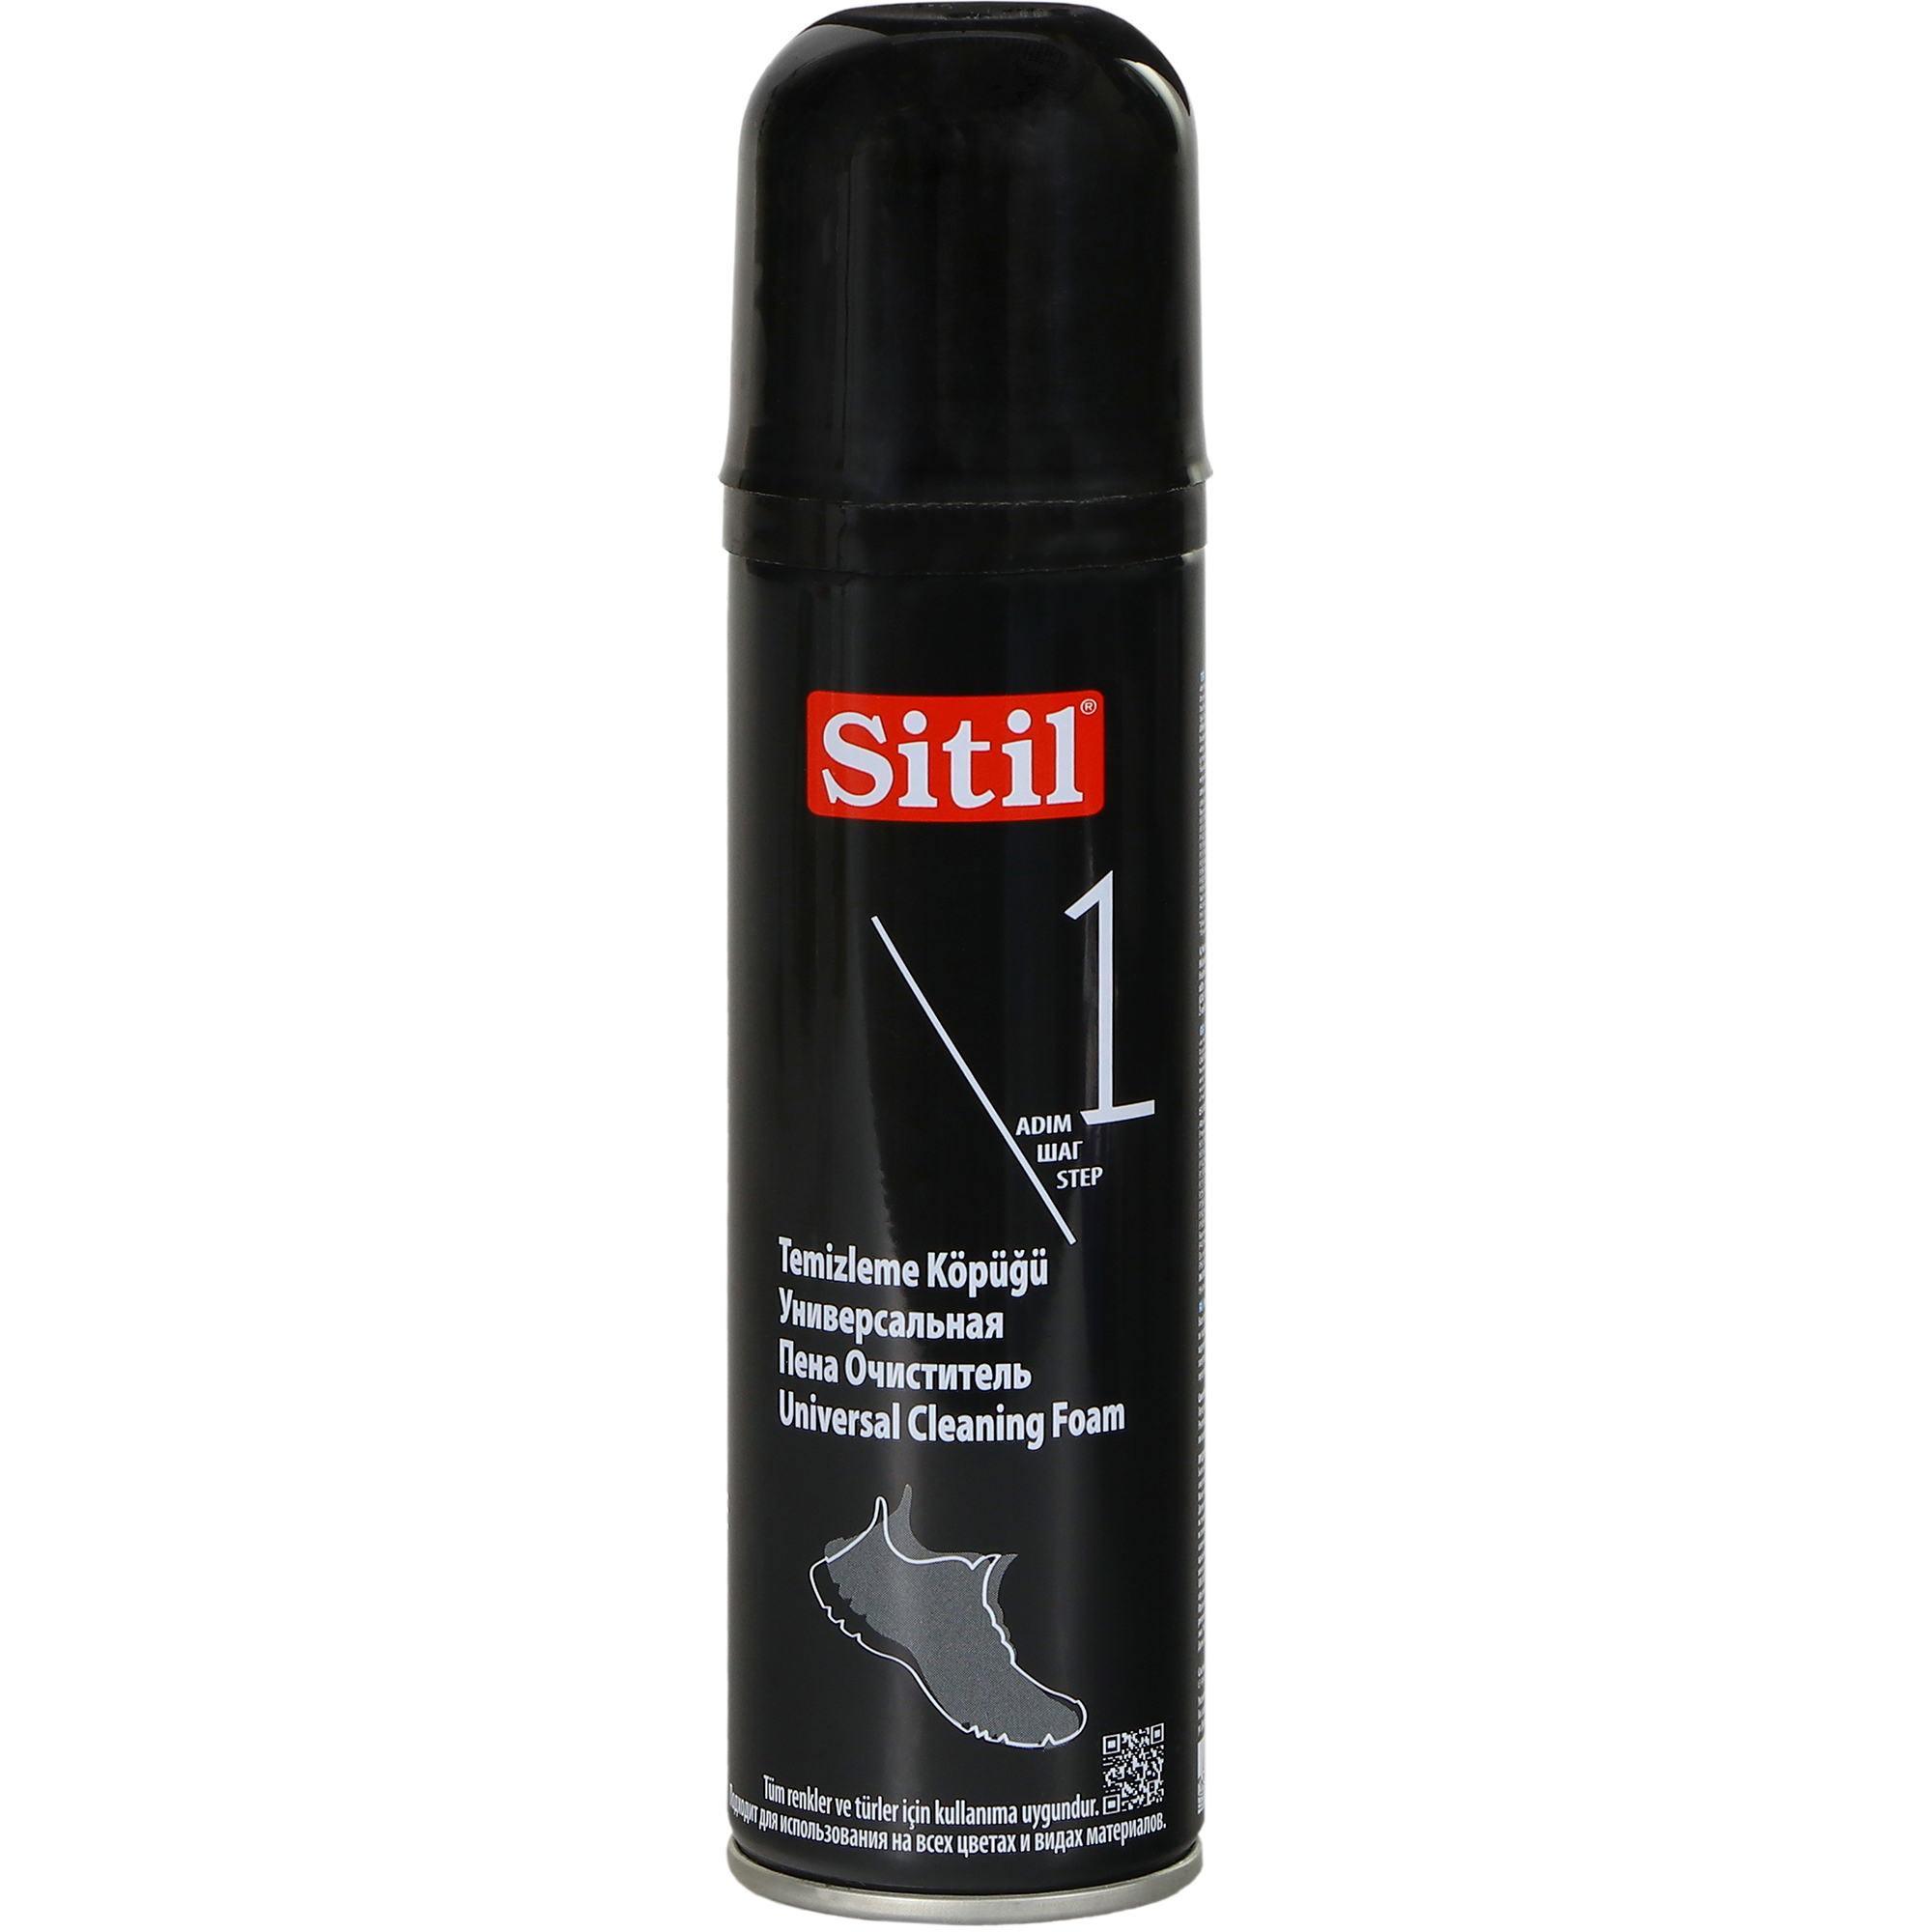 Пена-очиститель Sitil универсальная 150 мл уход за обувью 20 8966 universal cleaning foam 200 ml универсальная пена очиститель sitil цвет размер